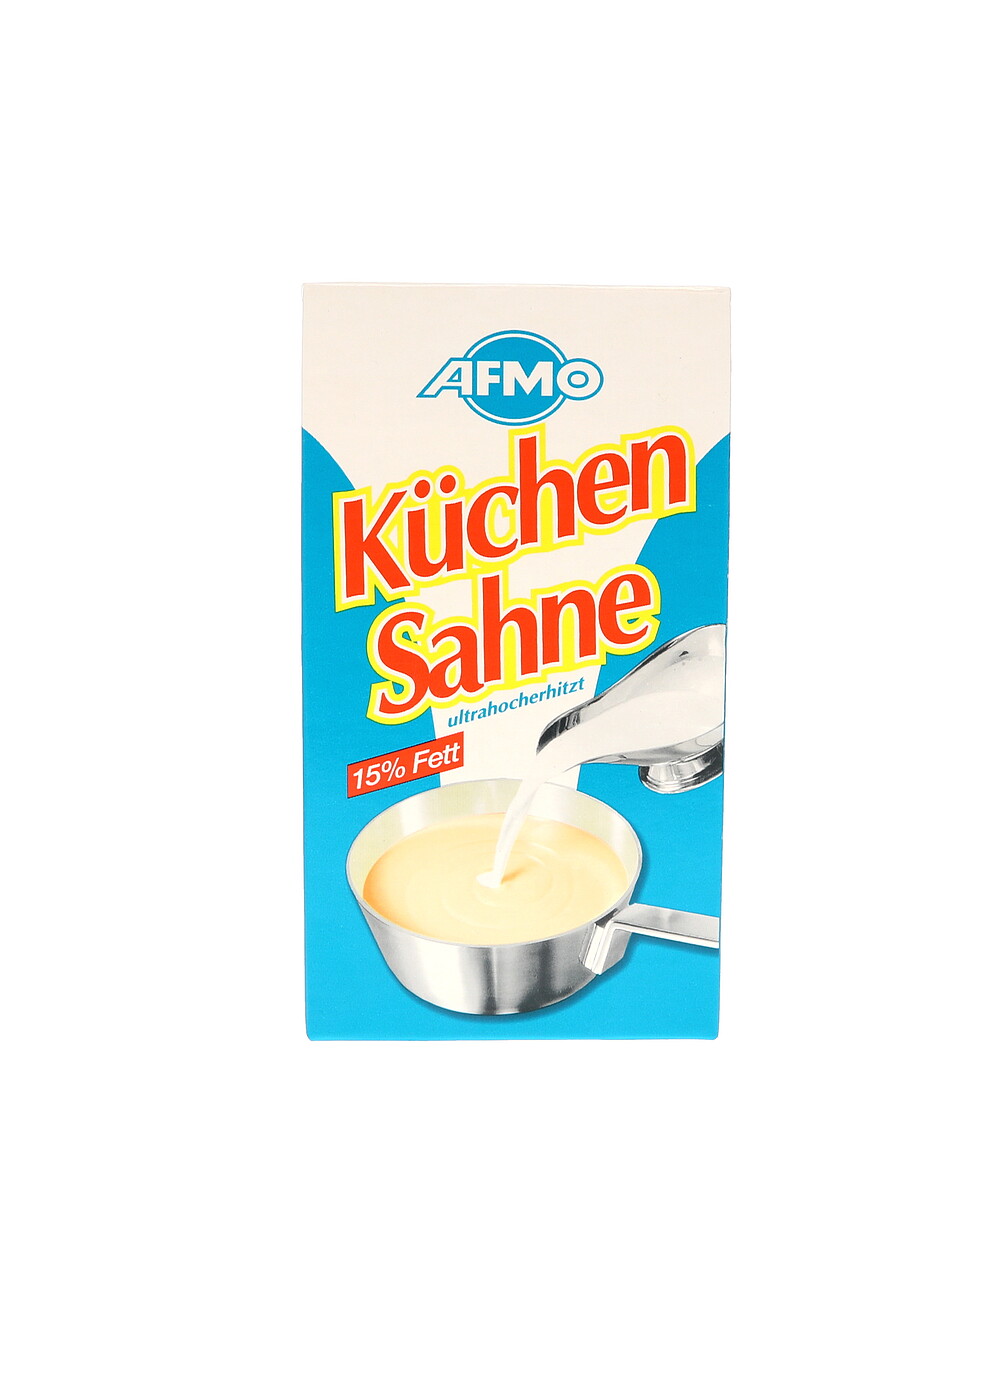 Afmo Küchensahne 15% 1 Liter 